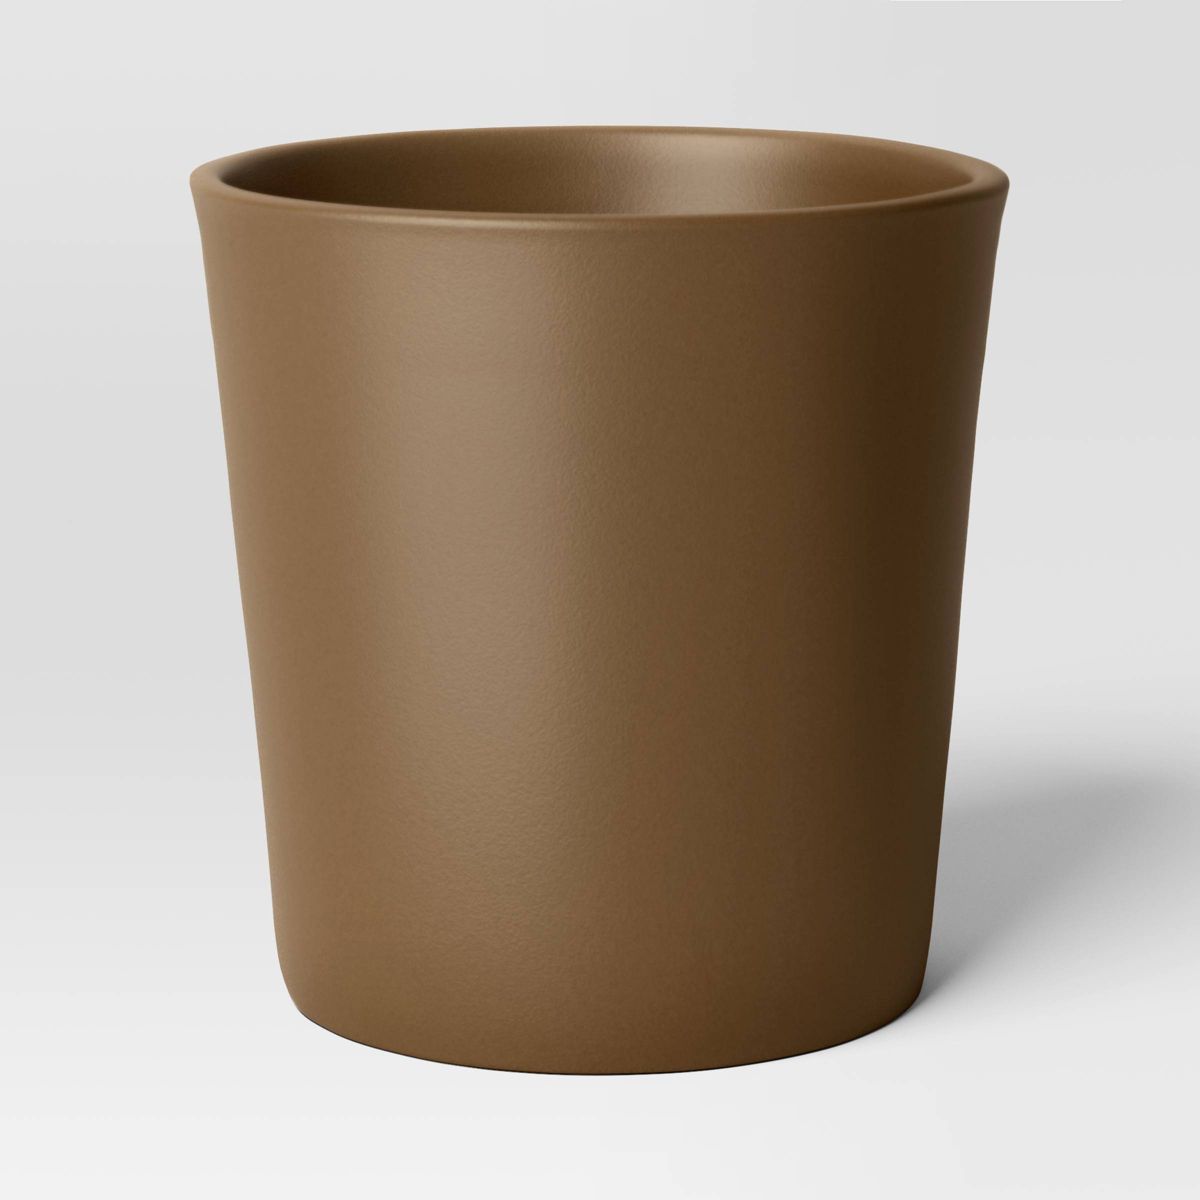 Aesthetic Plastic Indoor Outdoor Planter Pot Nest Brown 12.7"x12.7" - Threshold™ | Target